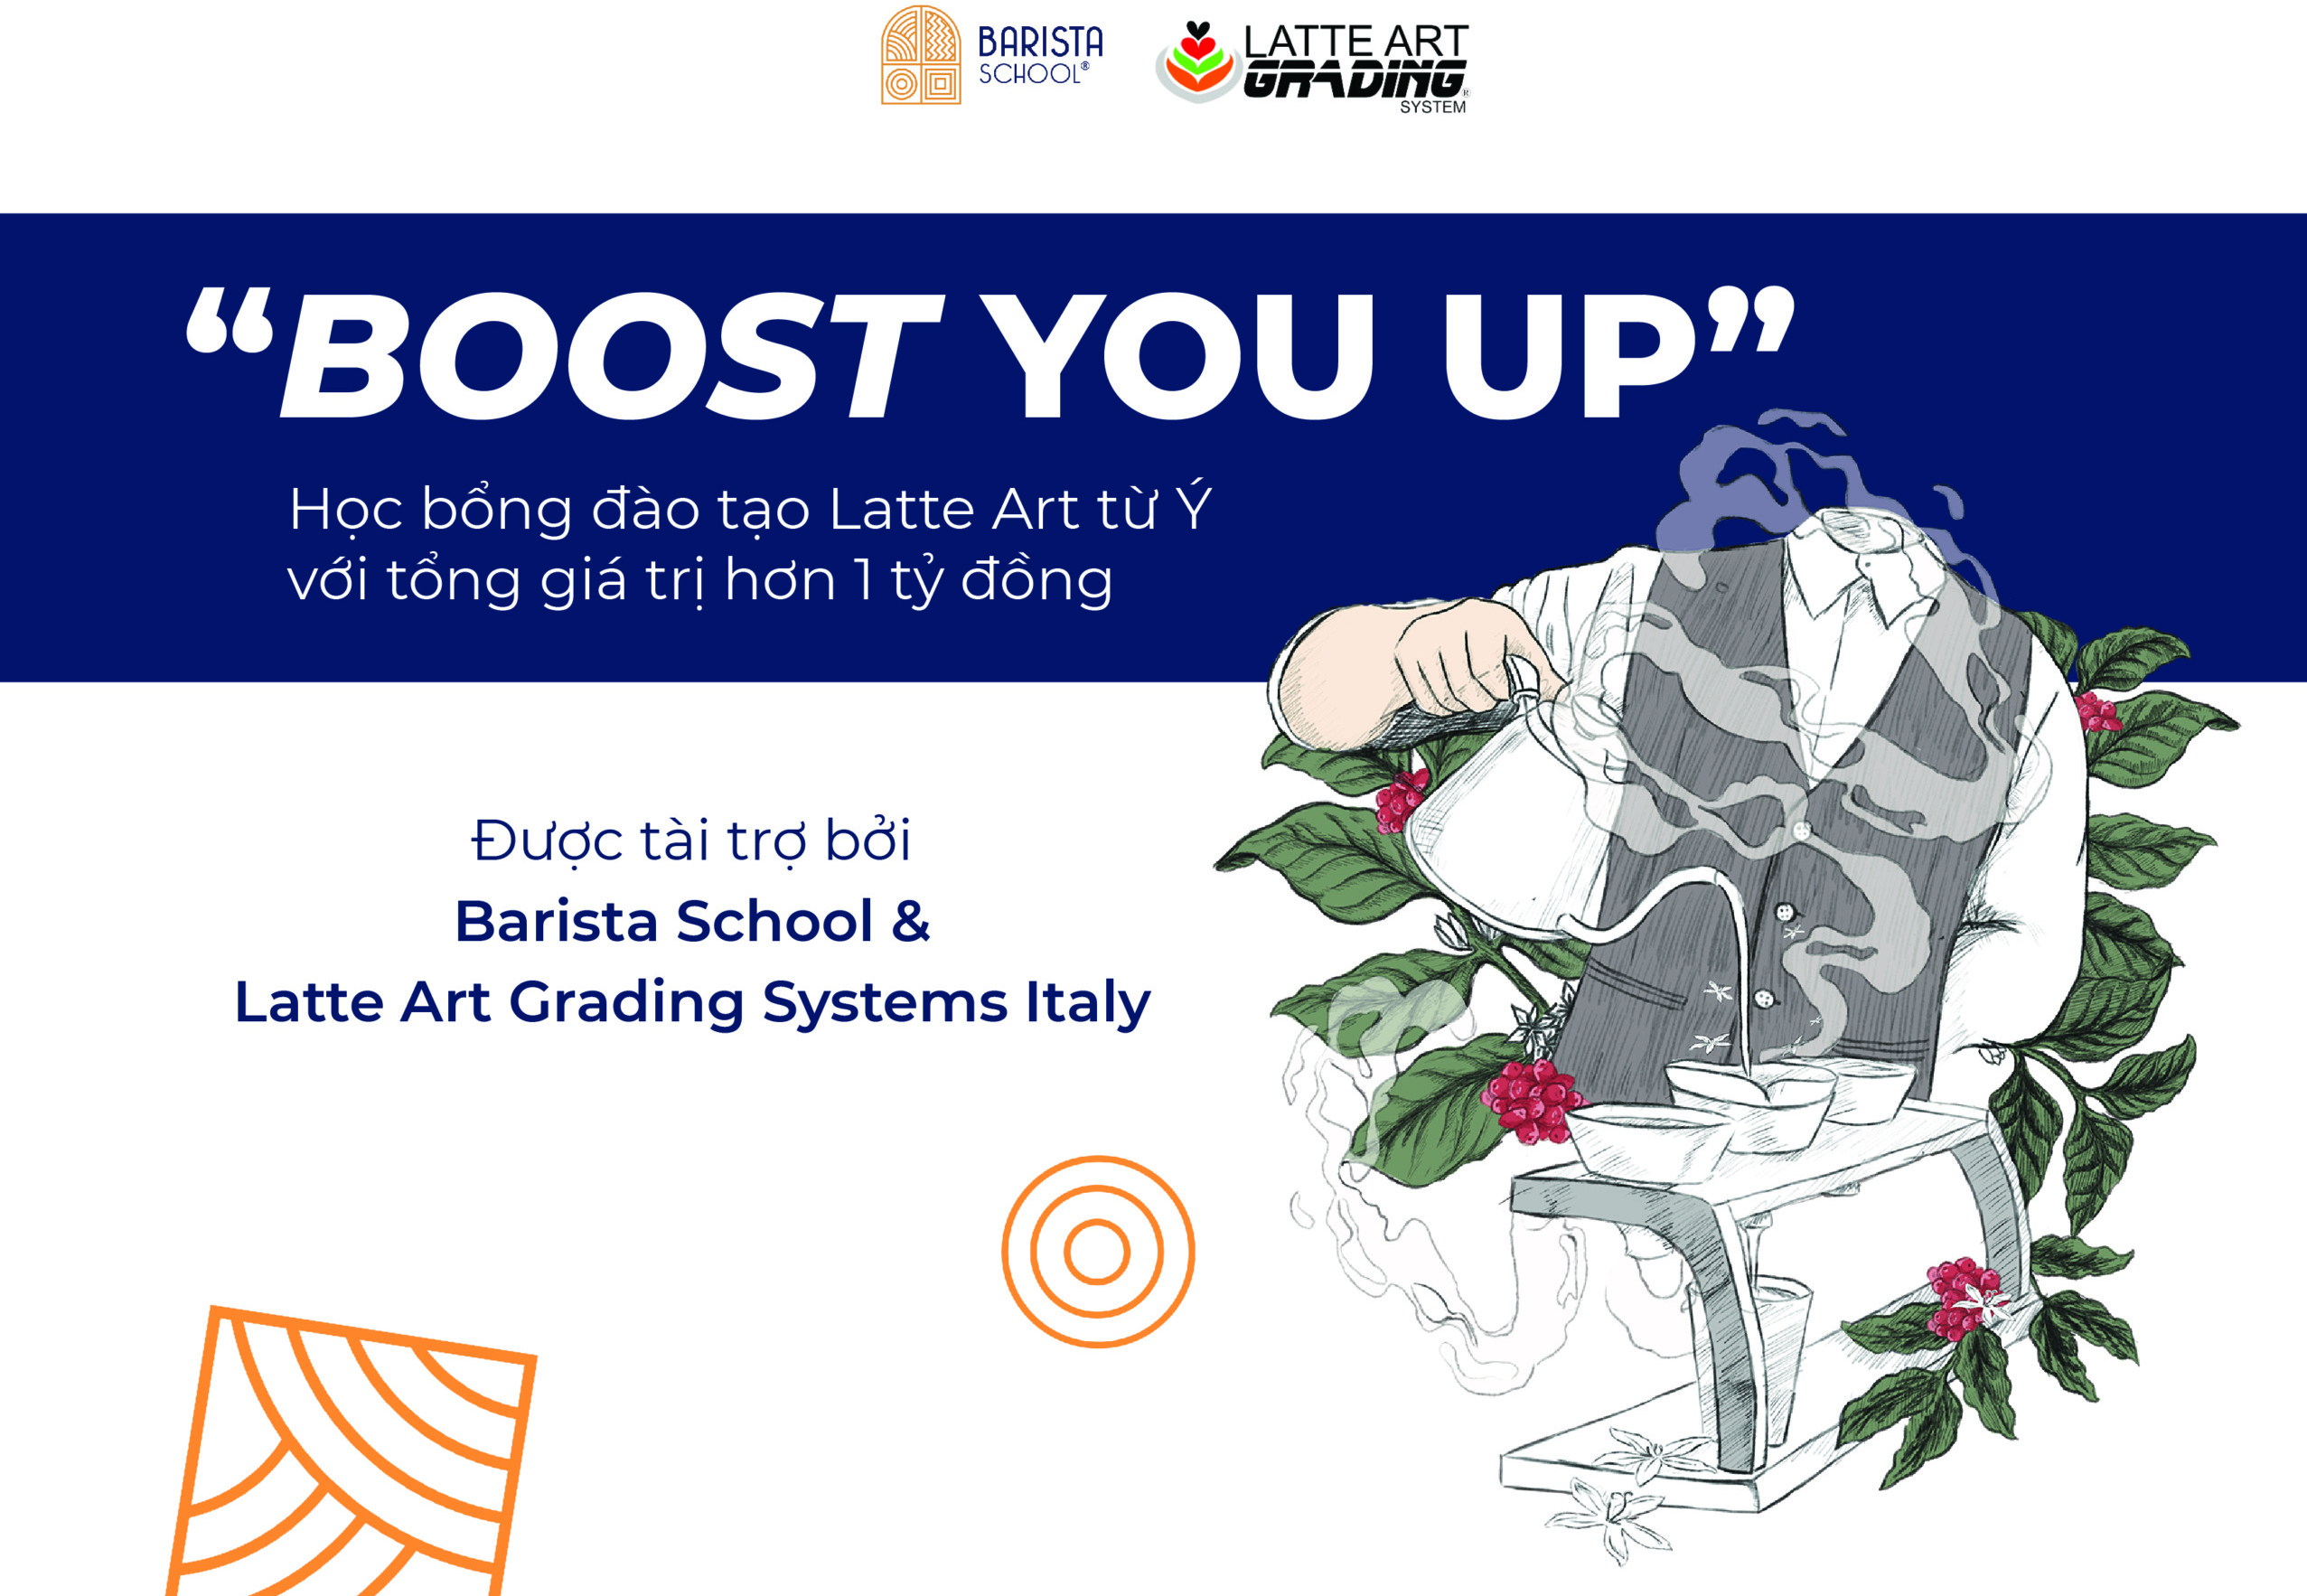 Nắm bắt cơ hội nhận học bổng đào tạo Latte Art từ Ý - BOOTS YOU UP